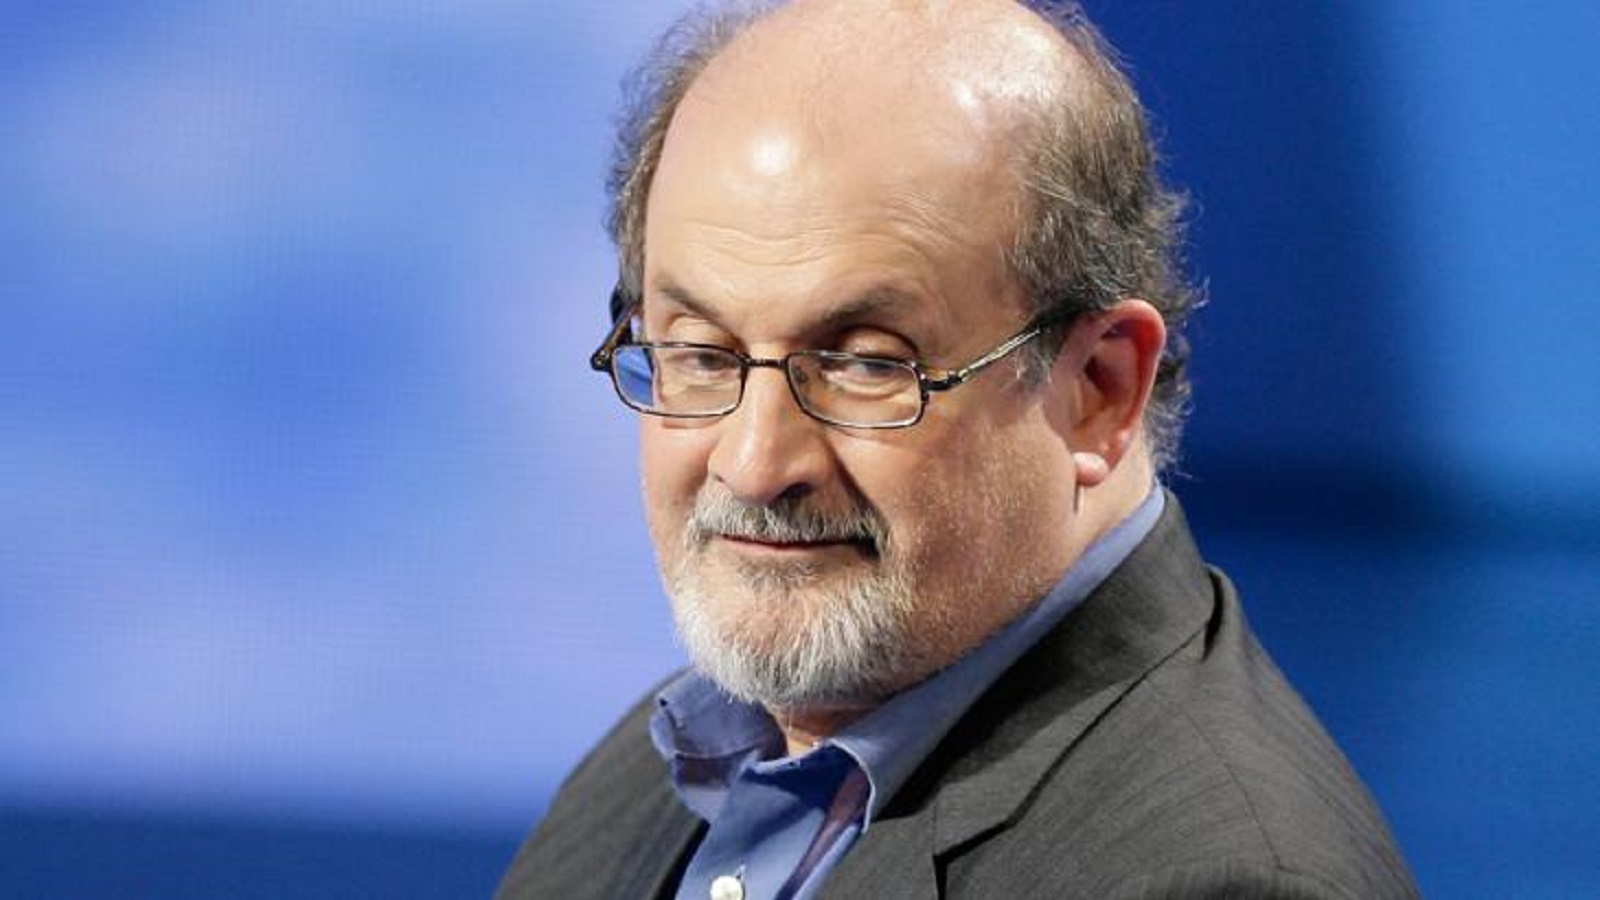 //ملف// سلمان رشدي.. الفتوى والكوزموبوليتية والصلاة